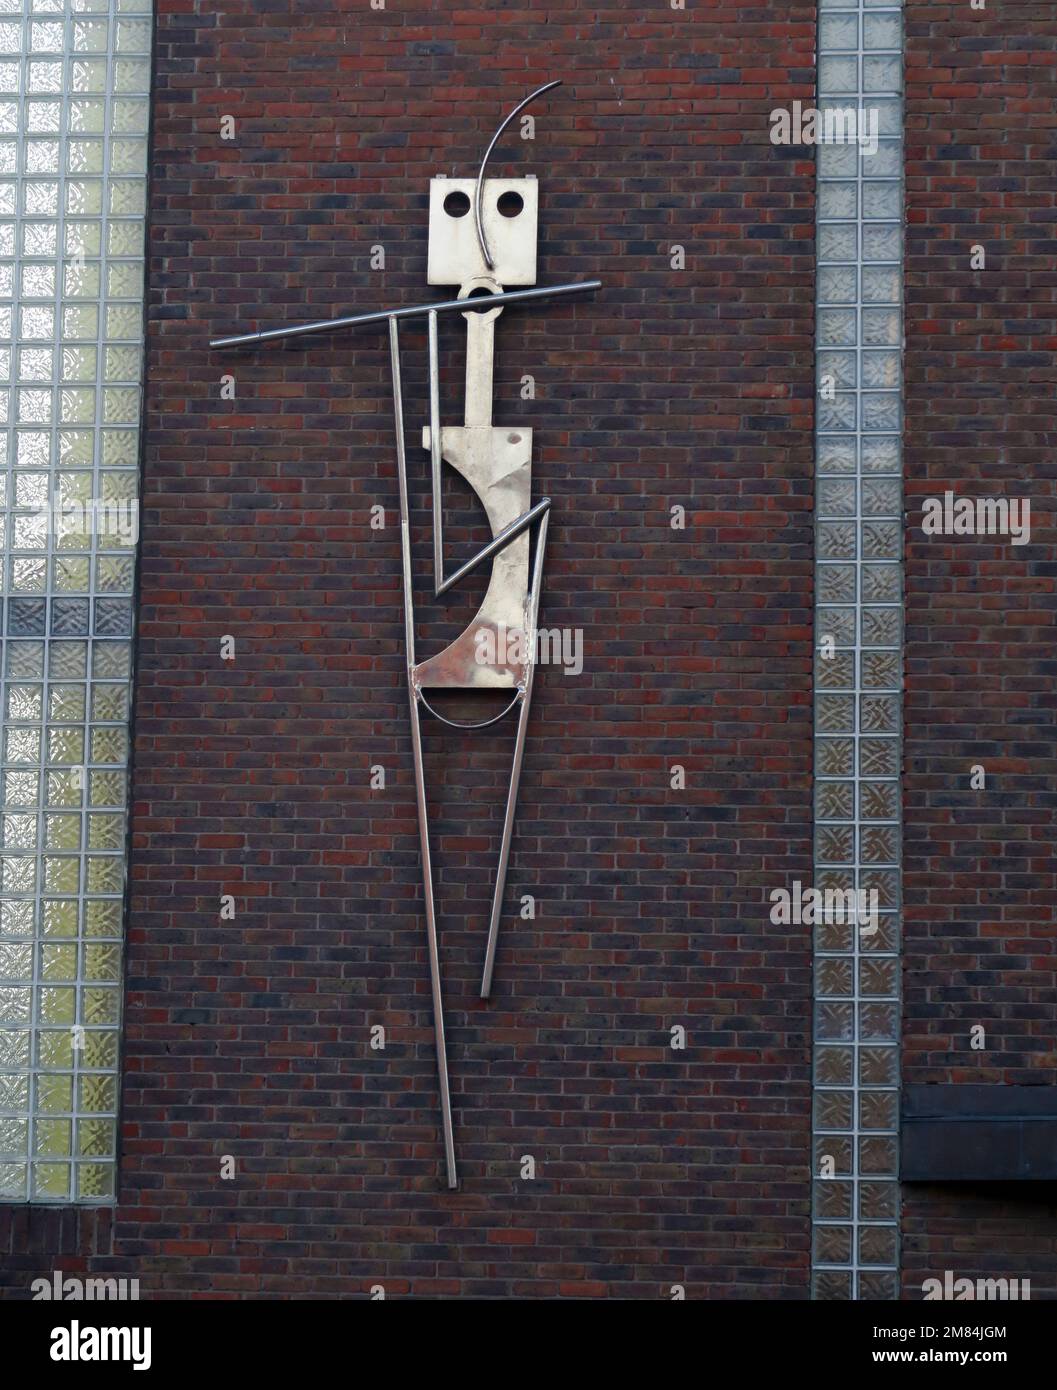 Art métallique, figure jouant une flûte, attaché à un mur de briques, 8 King St N, Dublin, D07 X704, Eire, Irlande Banque D'Images